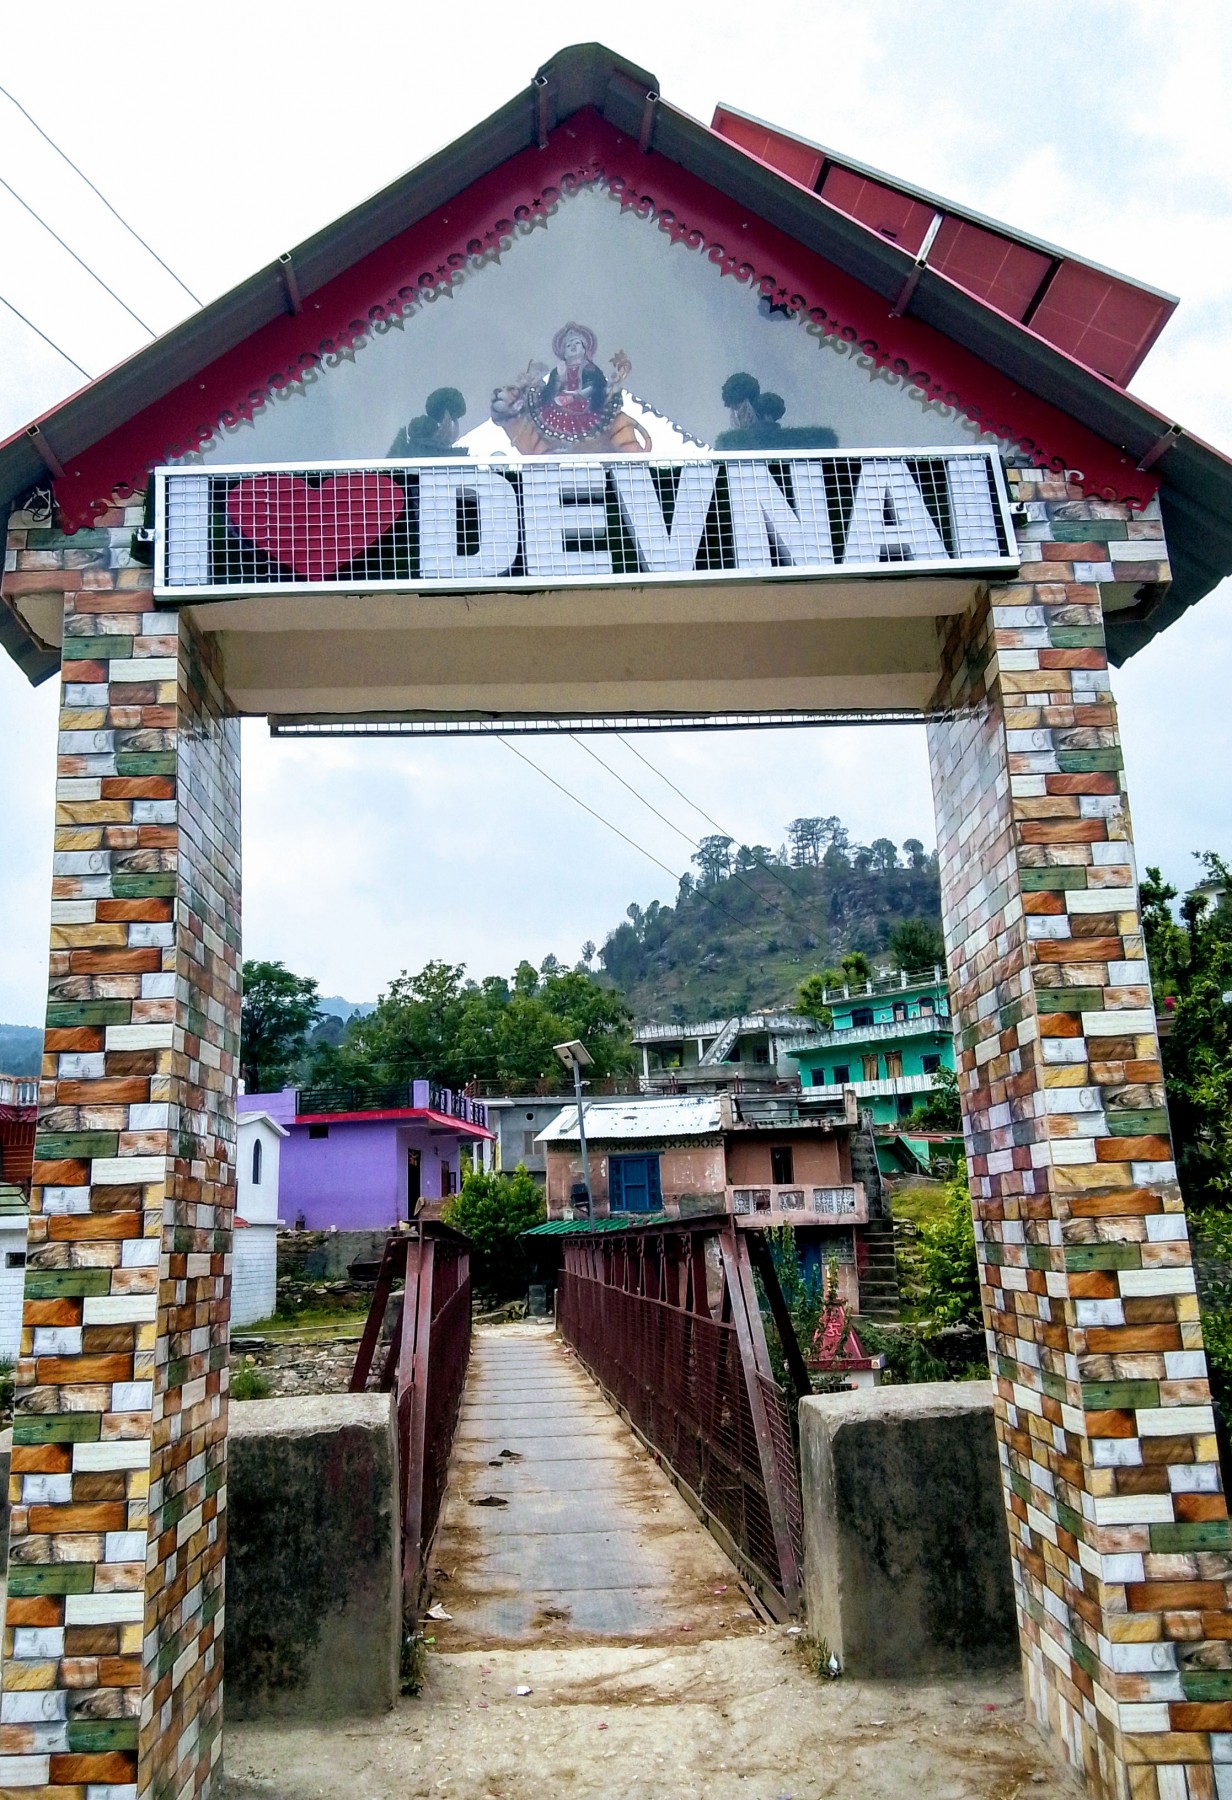 Dhyonai village, Bageshwar